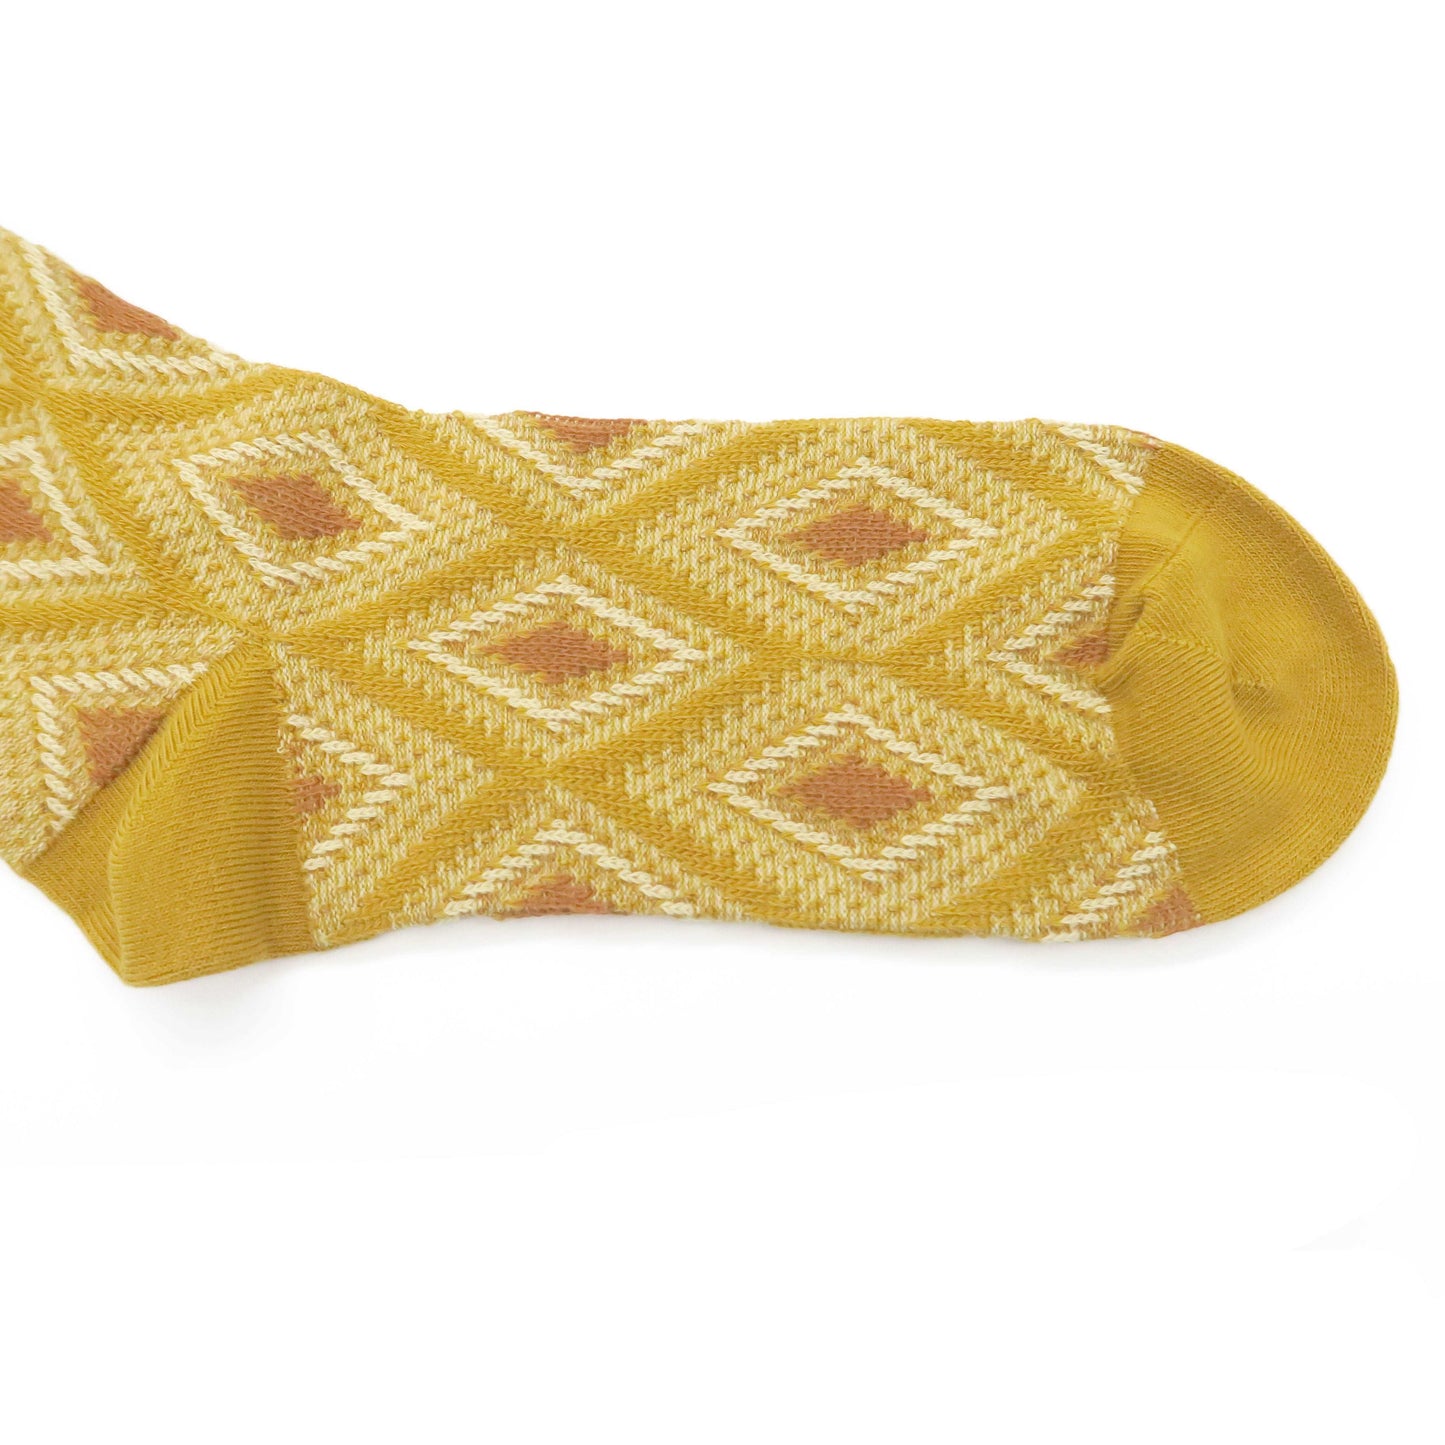 Mosaic socks - Mustard